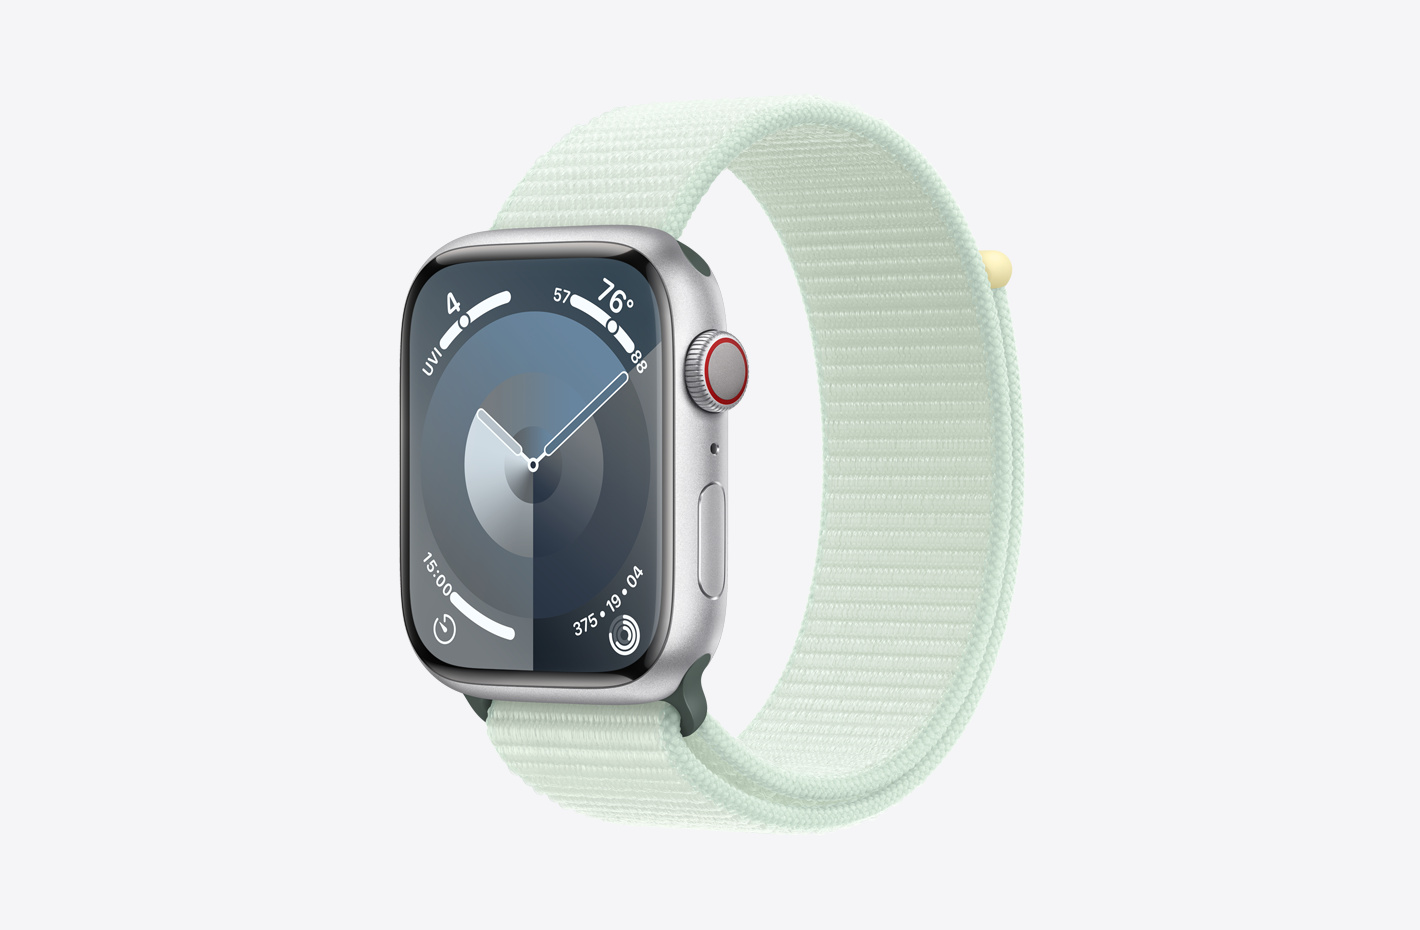 Apple Watch s pouzdrem ze stříbrného hliníku s matným povrchem a pohled v šikmém úhlu na světle mátový (zelený) provlékací sportovní řemínek z dvouvrstvé nylonové tkaniny se zapínáním na suchý zip